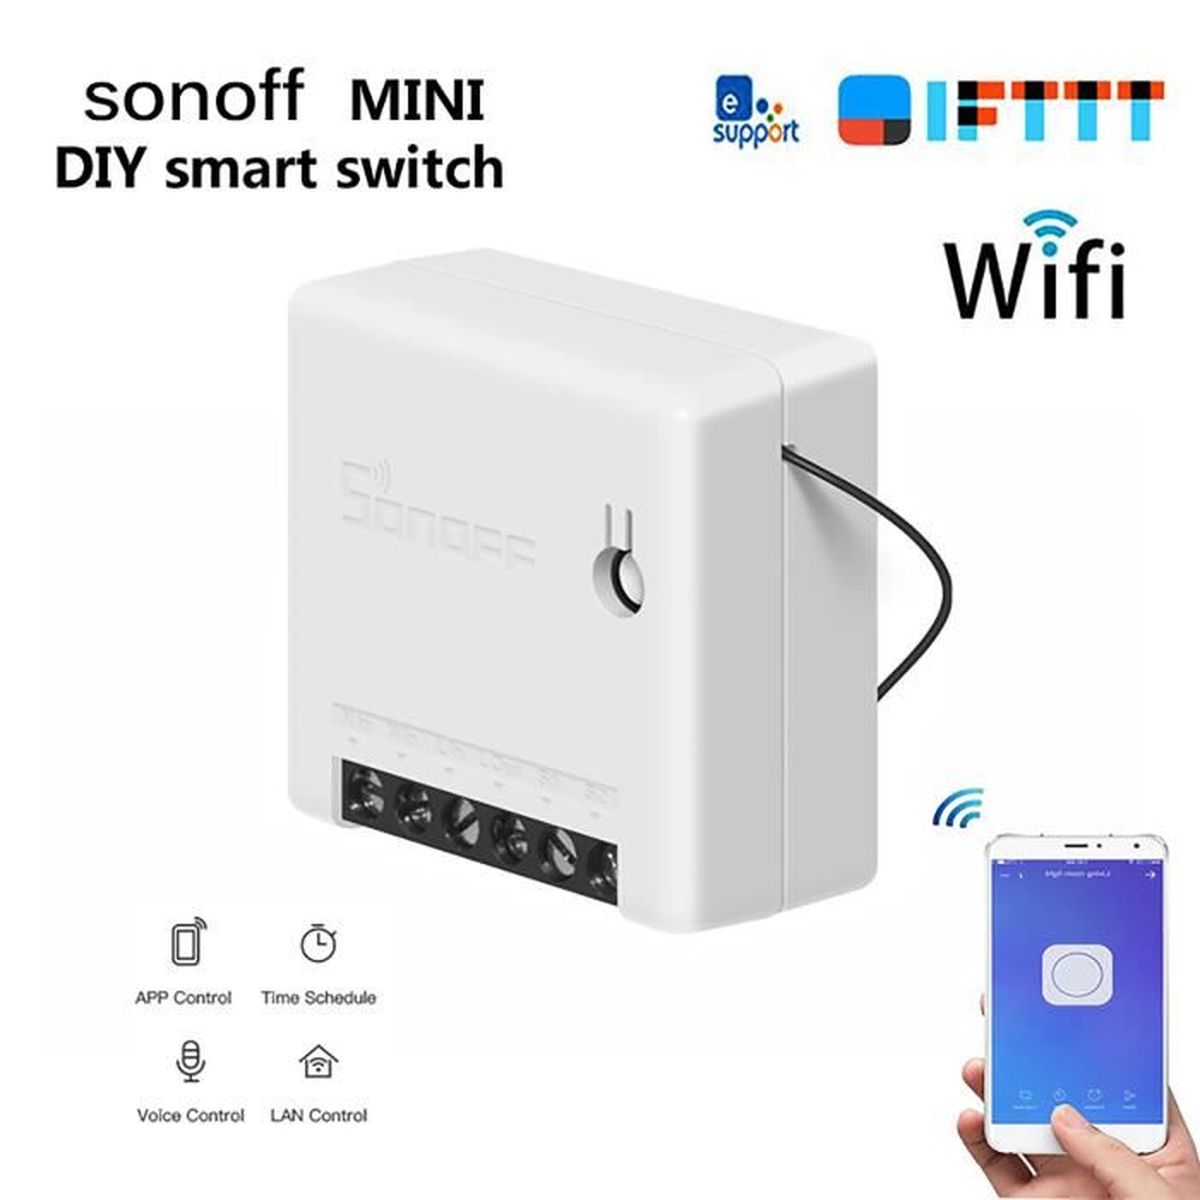 SONOFF MINI Interrupteur Connecté WiFi 2 Voies Commutateur Intelligent 4PCS,Compatible avec Alexa/Google Home/Nest/IFTTT,Contrôle à Distance,Commande Vocale,Fonction de Temps,Supporte le contrôle LAN 